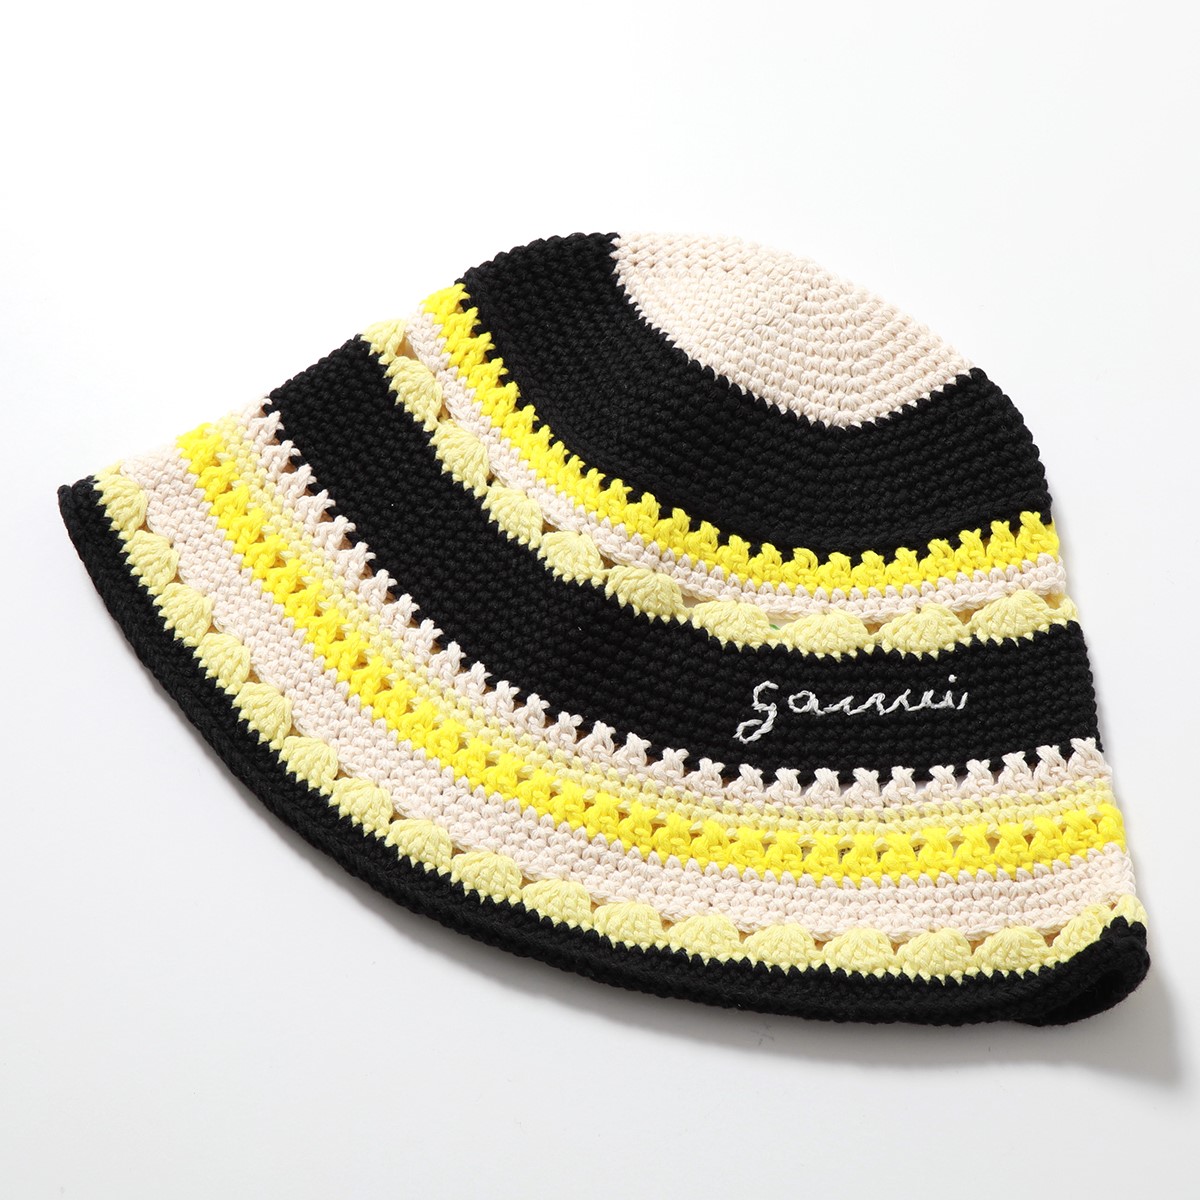 GANNI ガニー バケットハット Cotton Crochet Bucket Hat A4514 5790 A4712 5790 レディース  クロシェ かぎ針編み コットン ロゴ 帽子 カラー2色